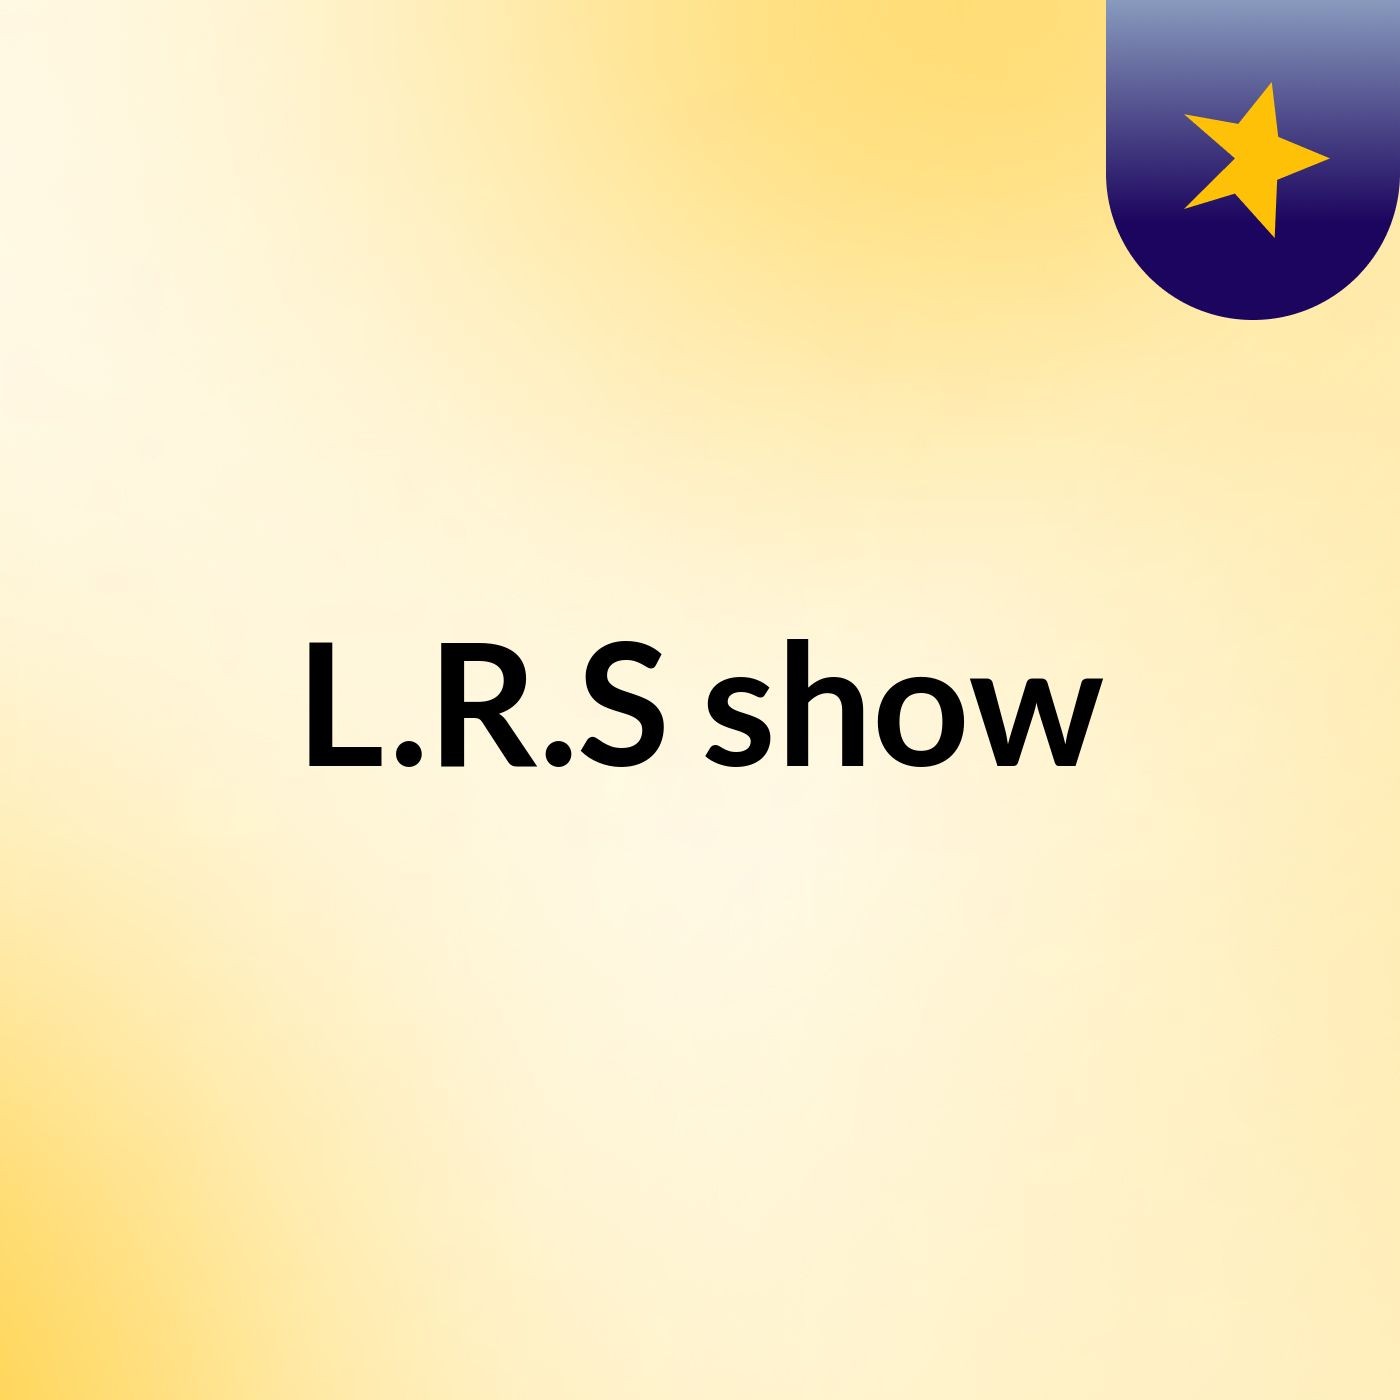 L.R.S show